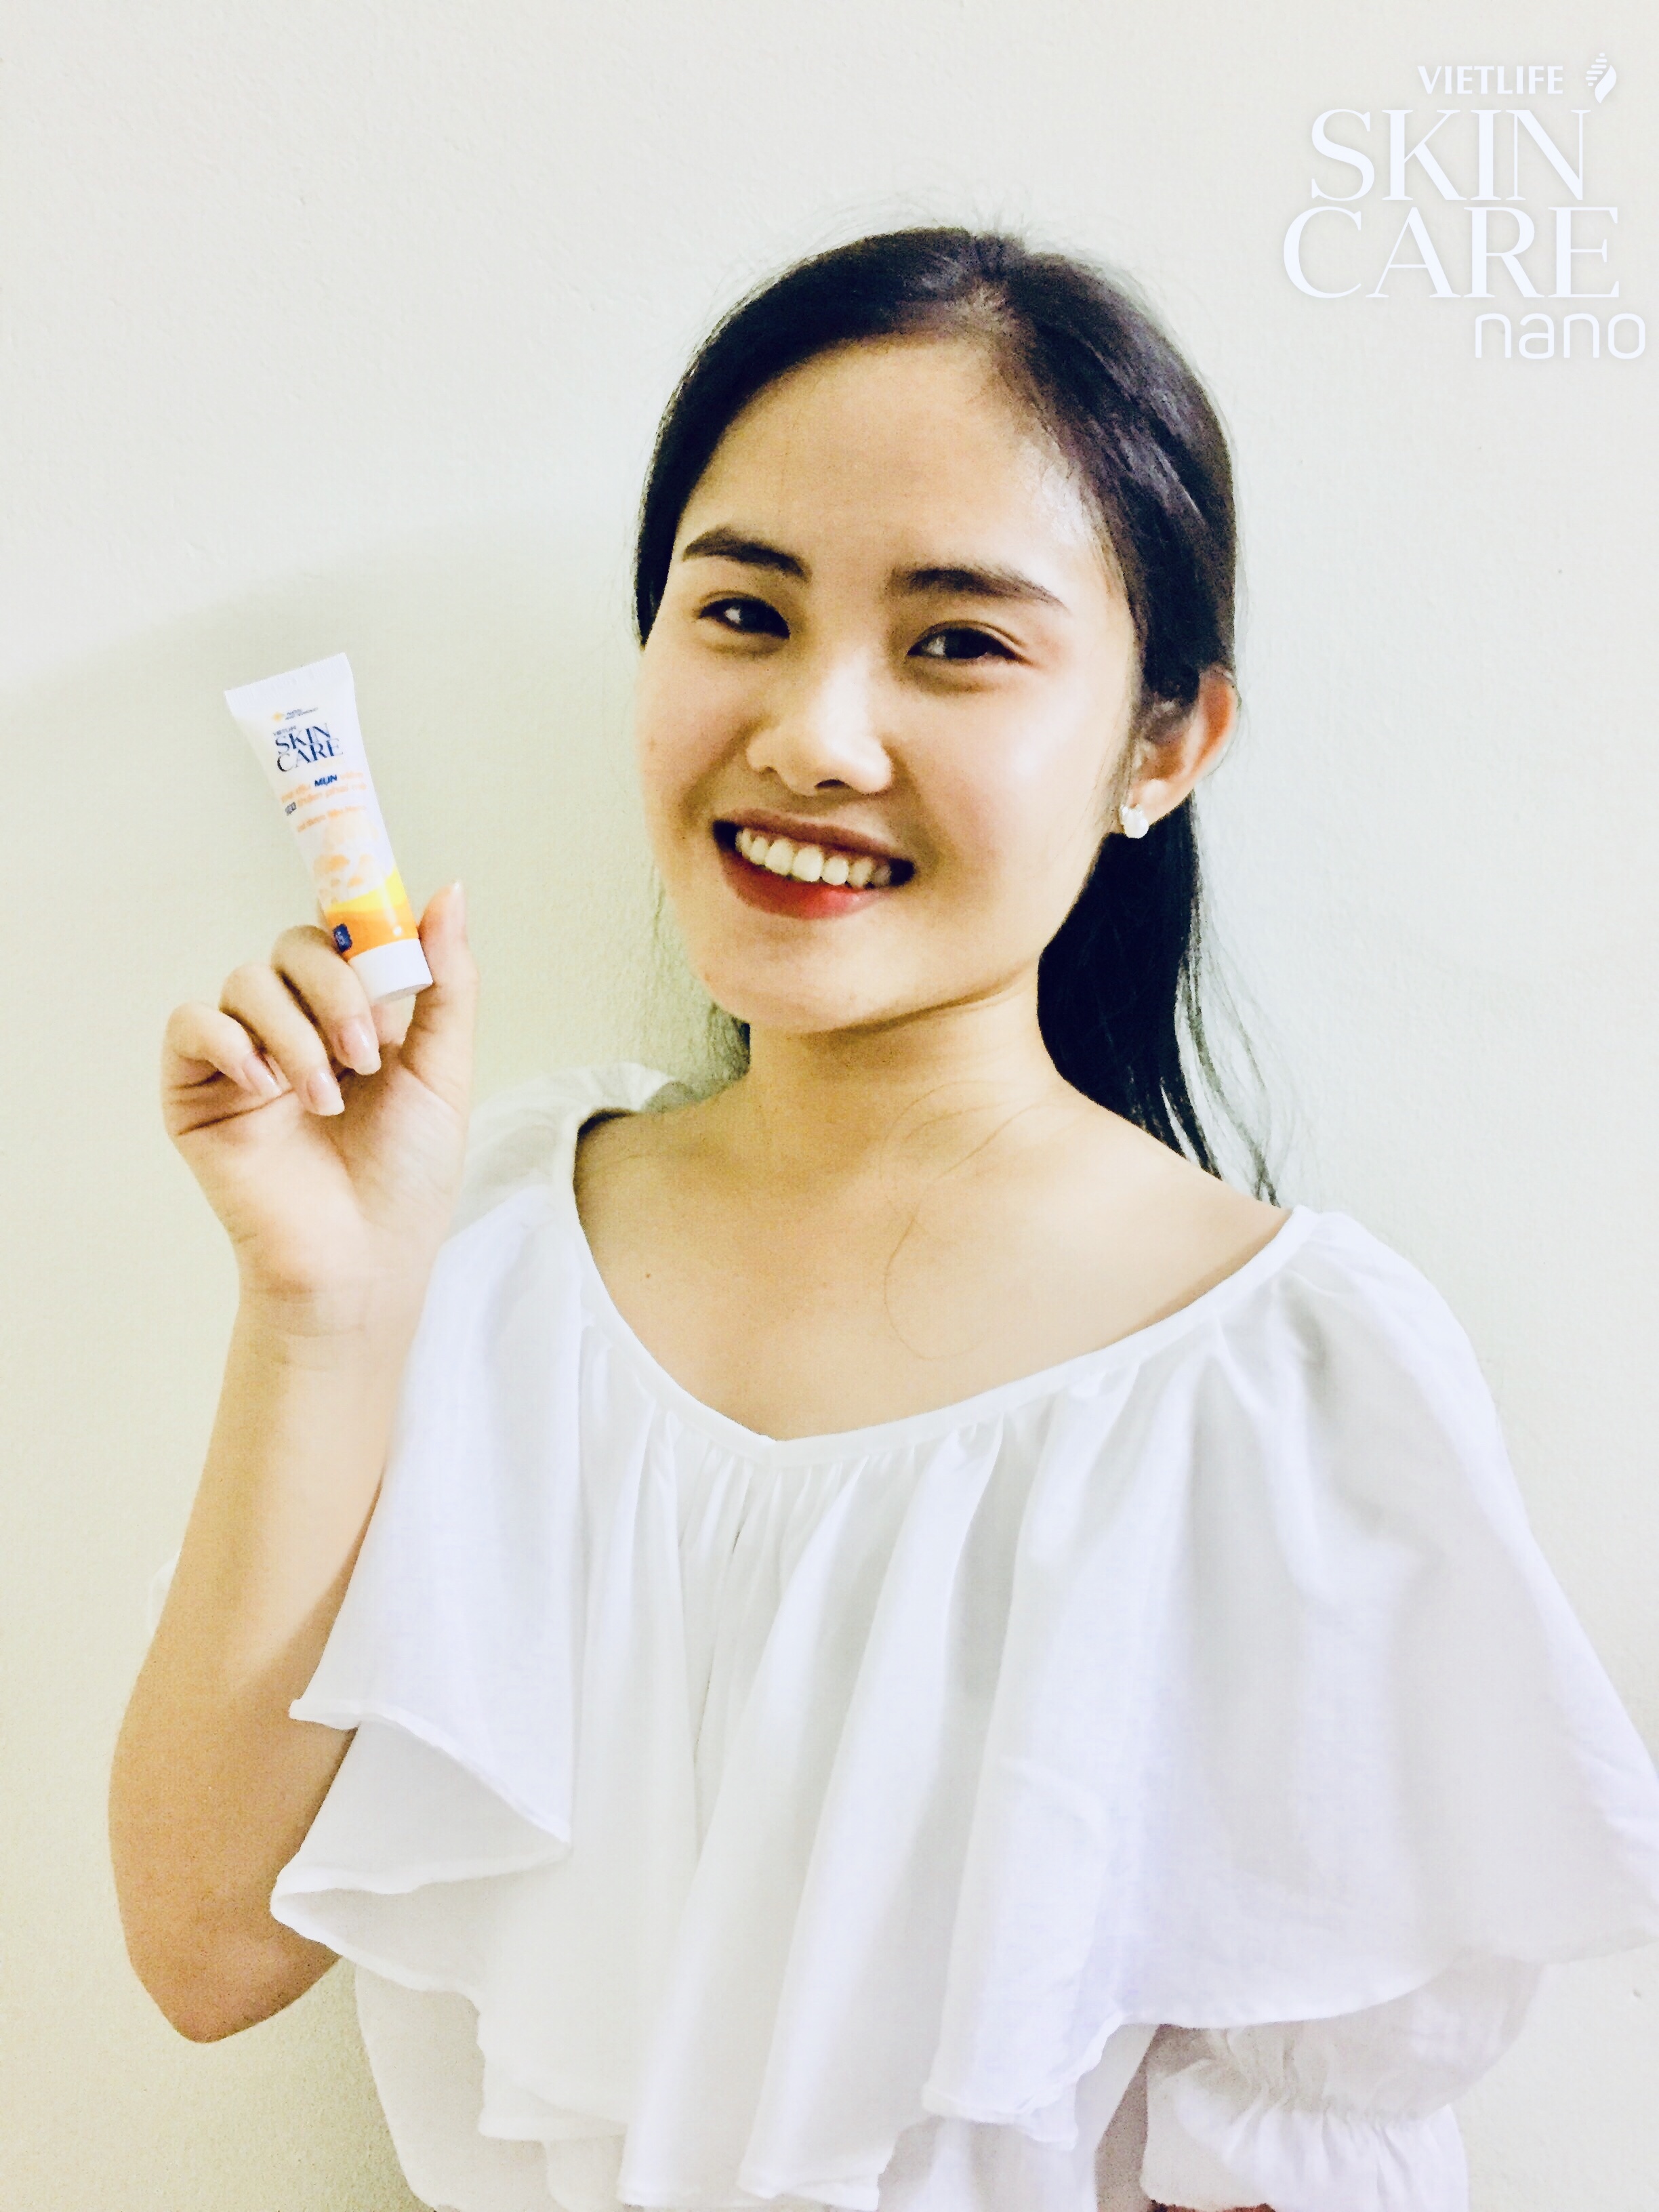 |Review| Vietlife Skincare Nano giúp vết thâm giảm đi, dưỡng ẩm mềm mịn da sau 1 tuần 3